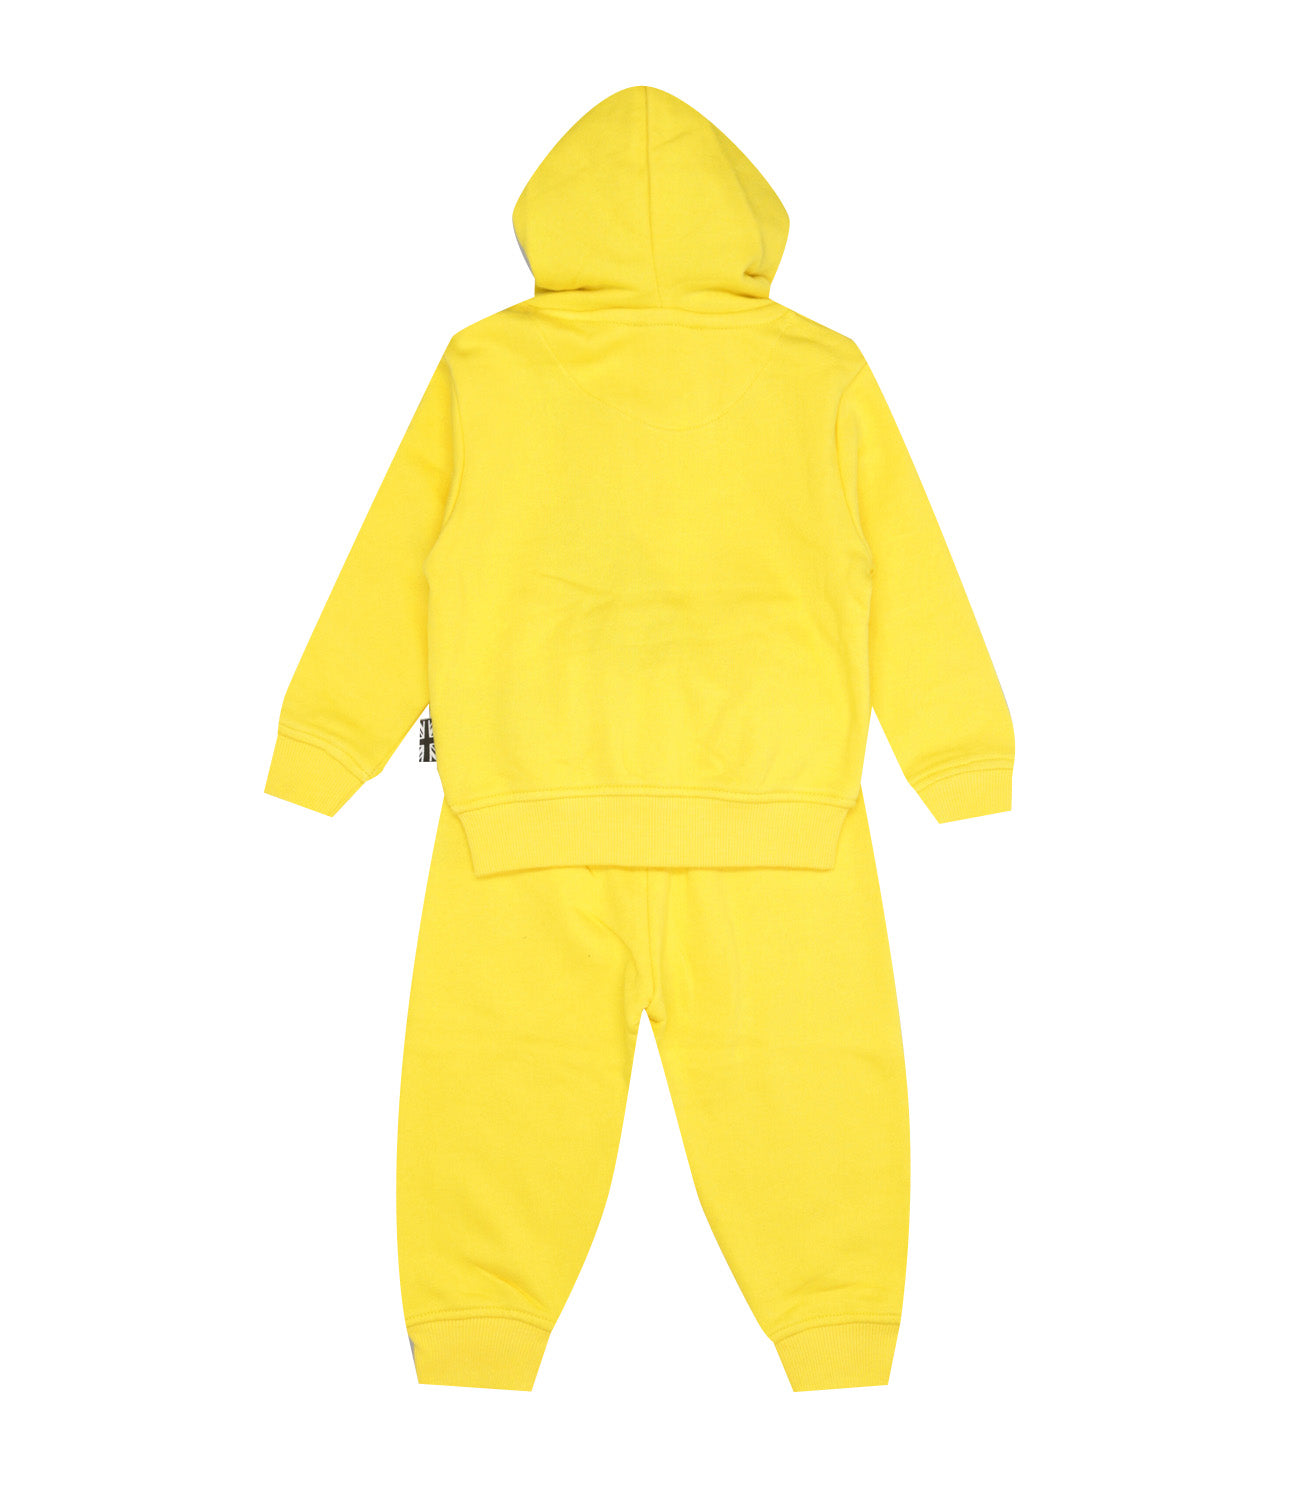 Richmond Kids | Iasi Sweatshirt and Trousers Set Yellow